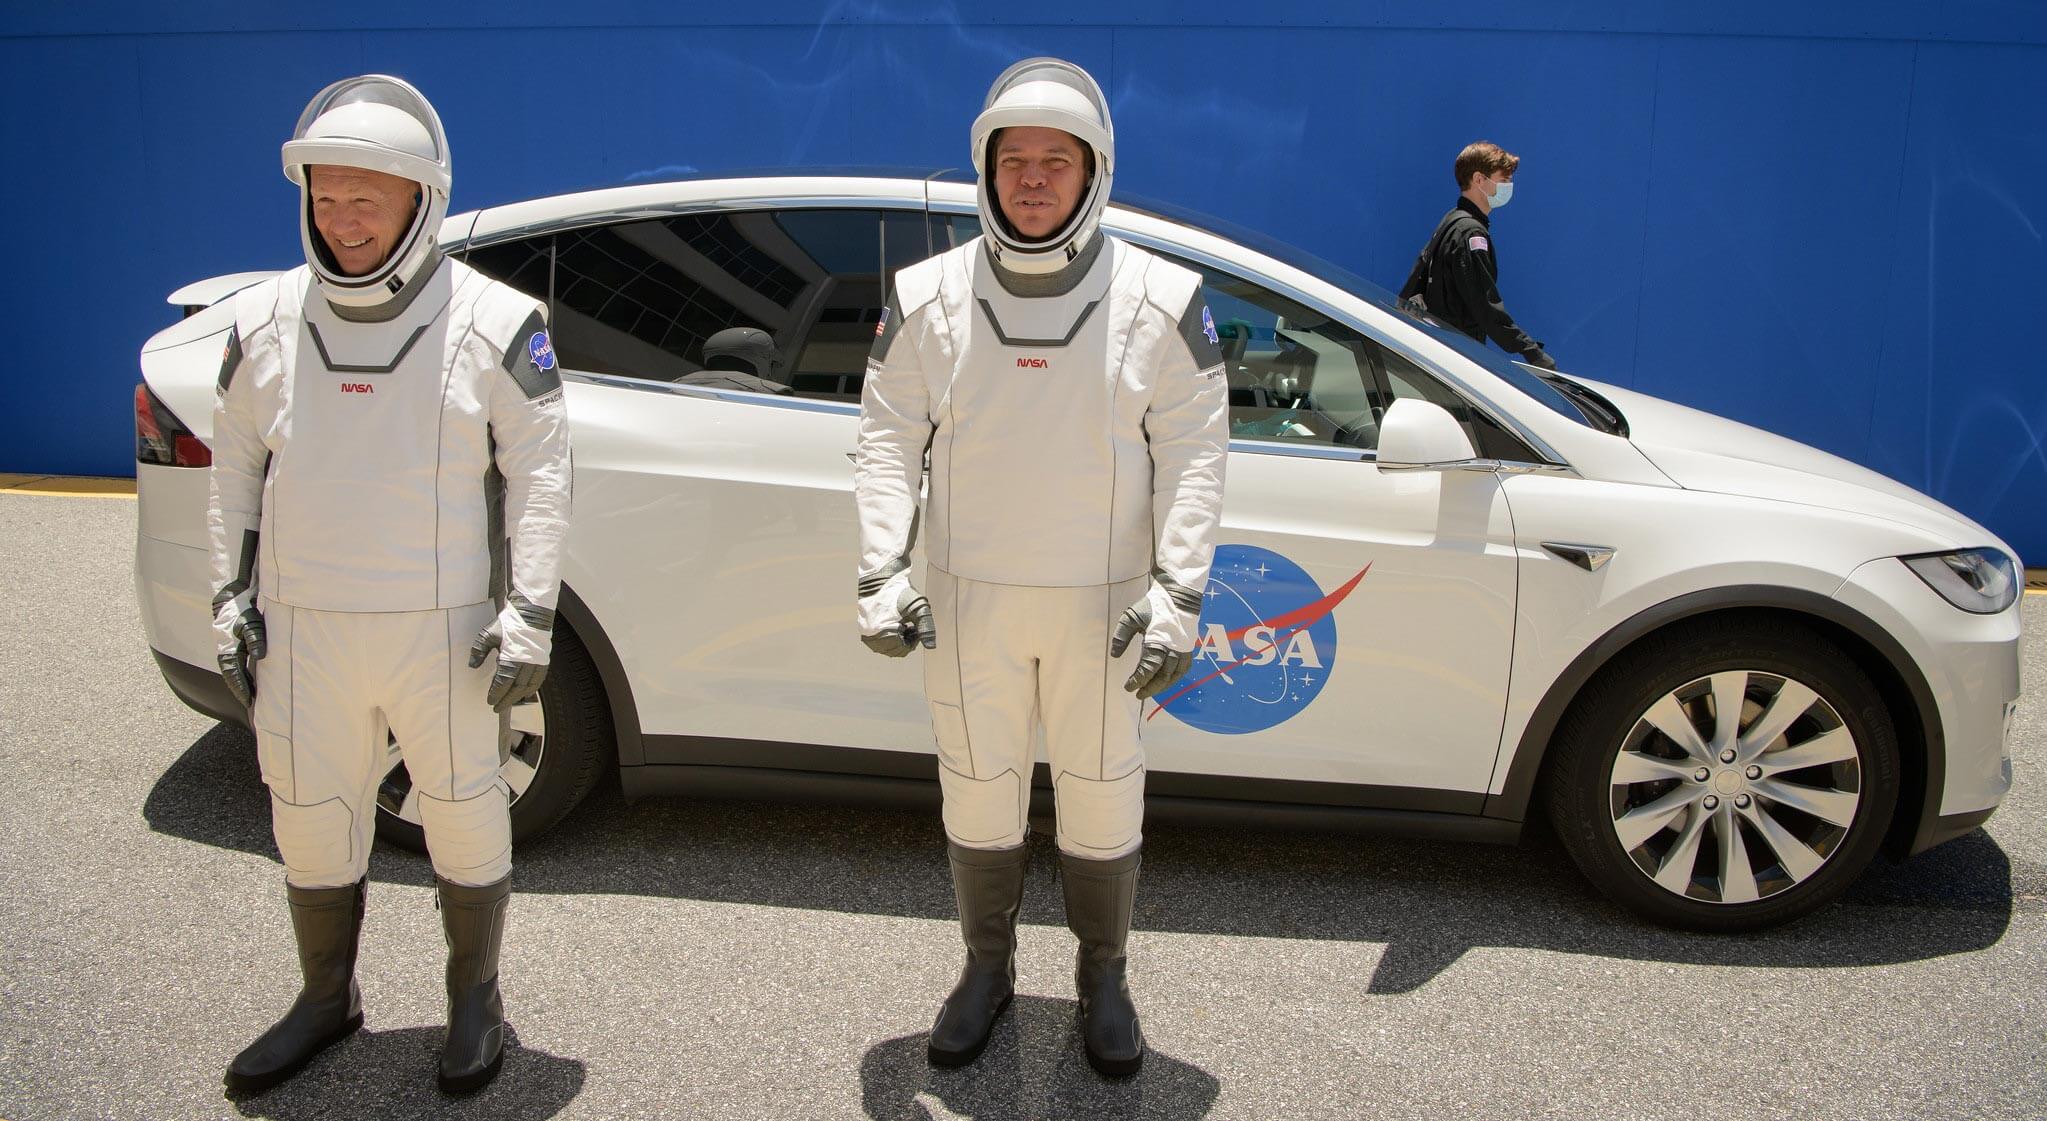 Başlangıç SpaceX Crew Dragon ISS transfer — olacak mı yine?